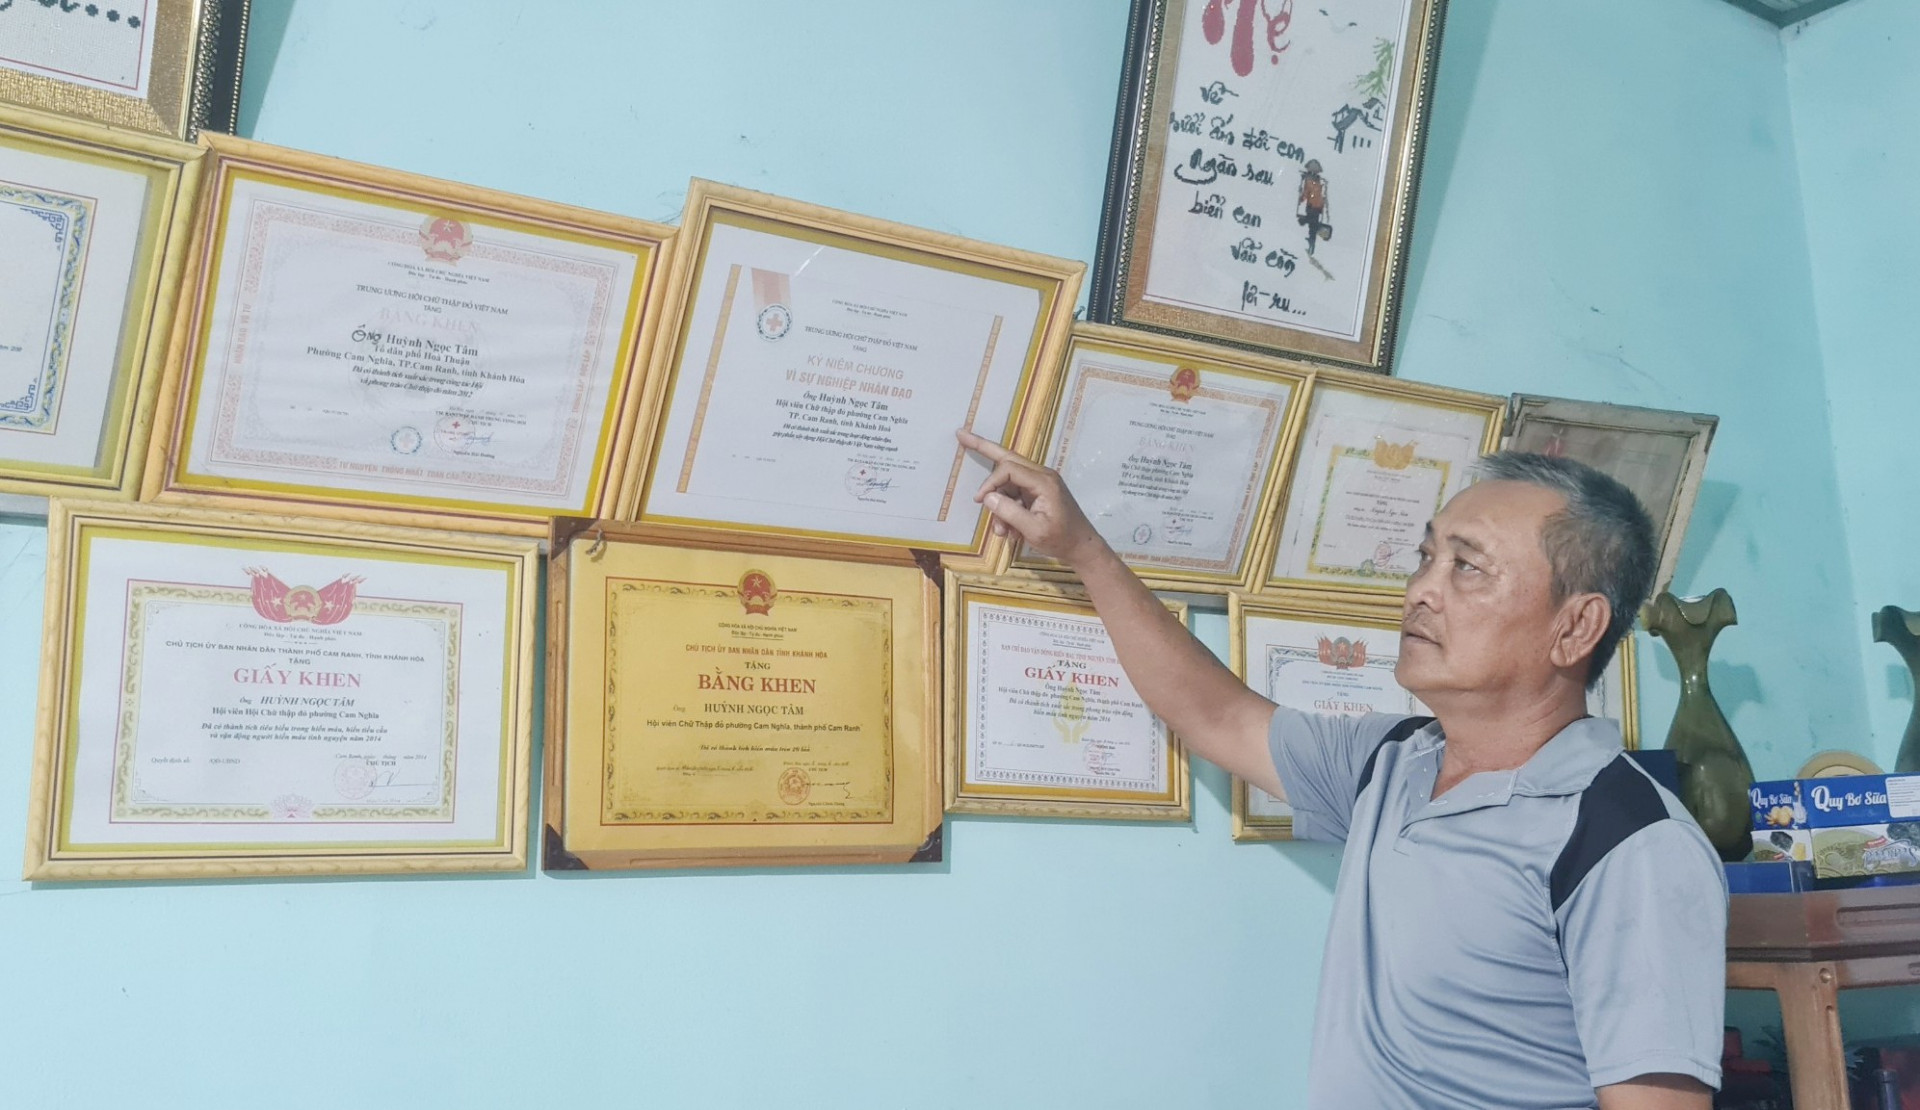 Với những đóng góp trong phong trào hiến máu tình nguyện, ông Huỳnh Ngọc Tâm được nhiều cơ quan, tổ chức ghi nhận, biểu dương.